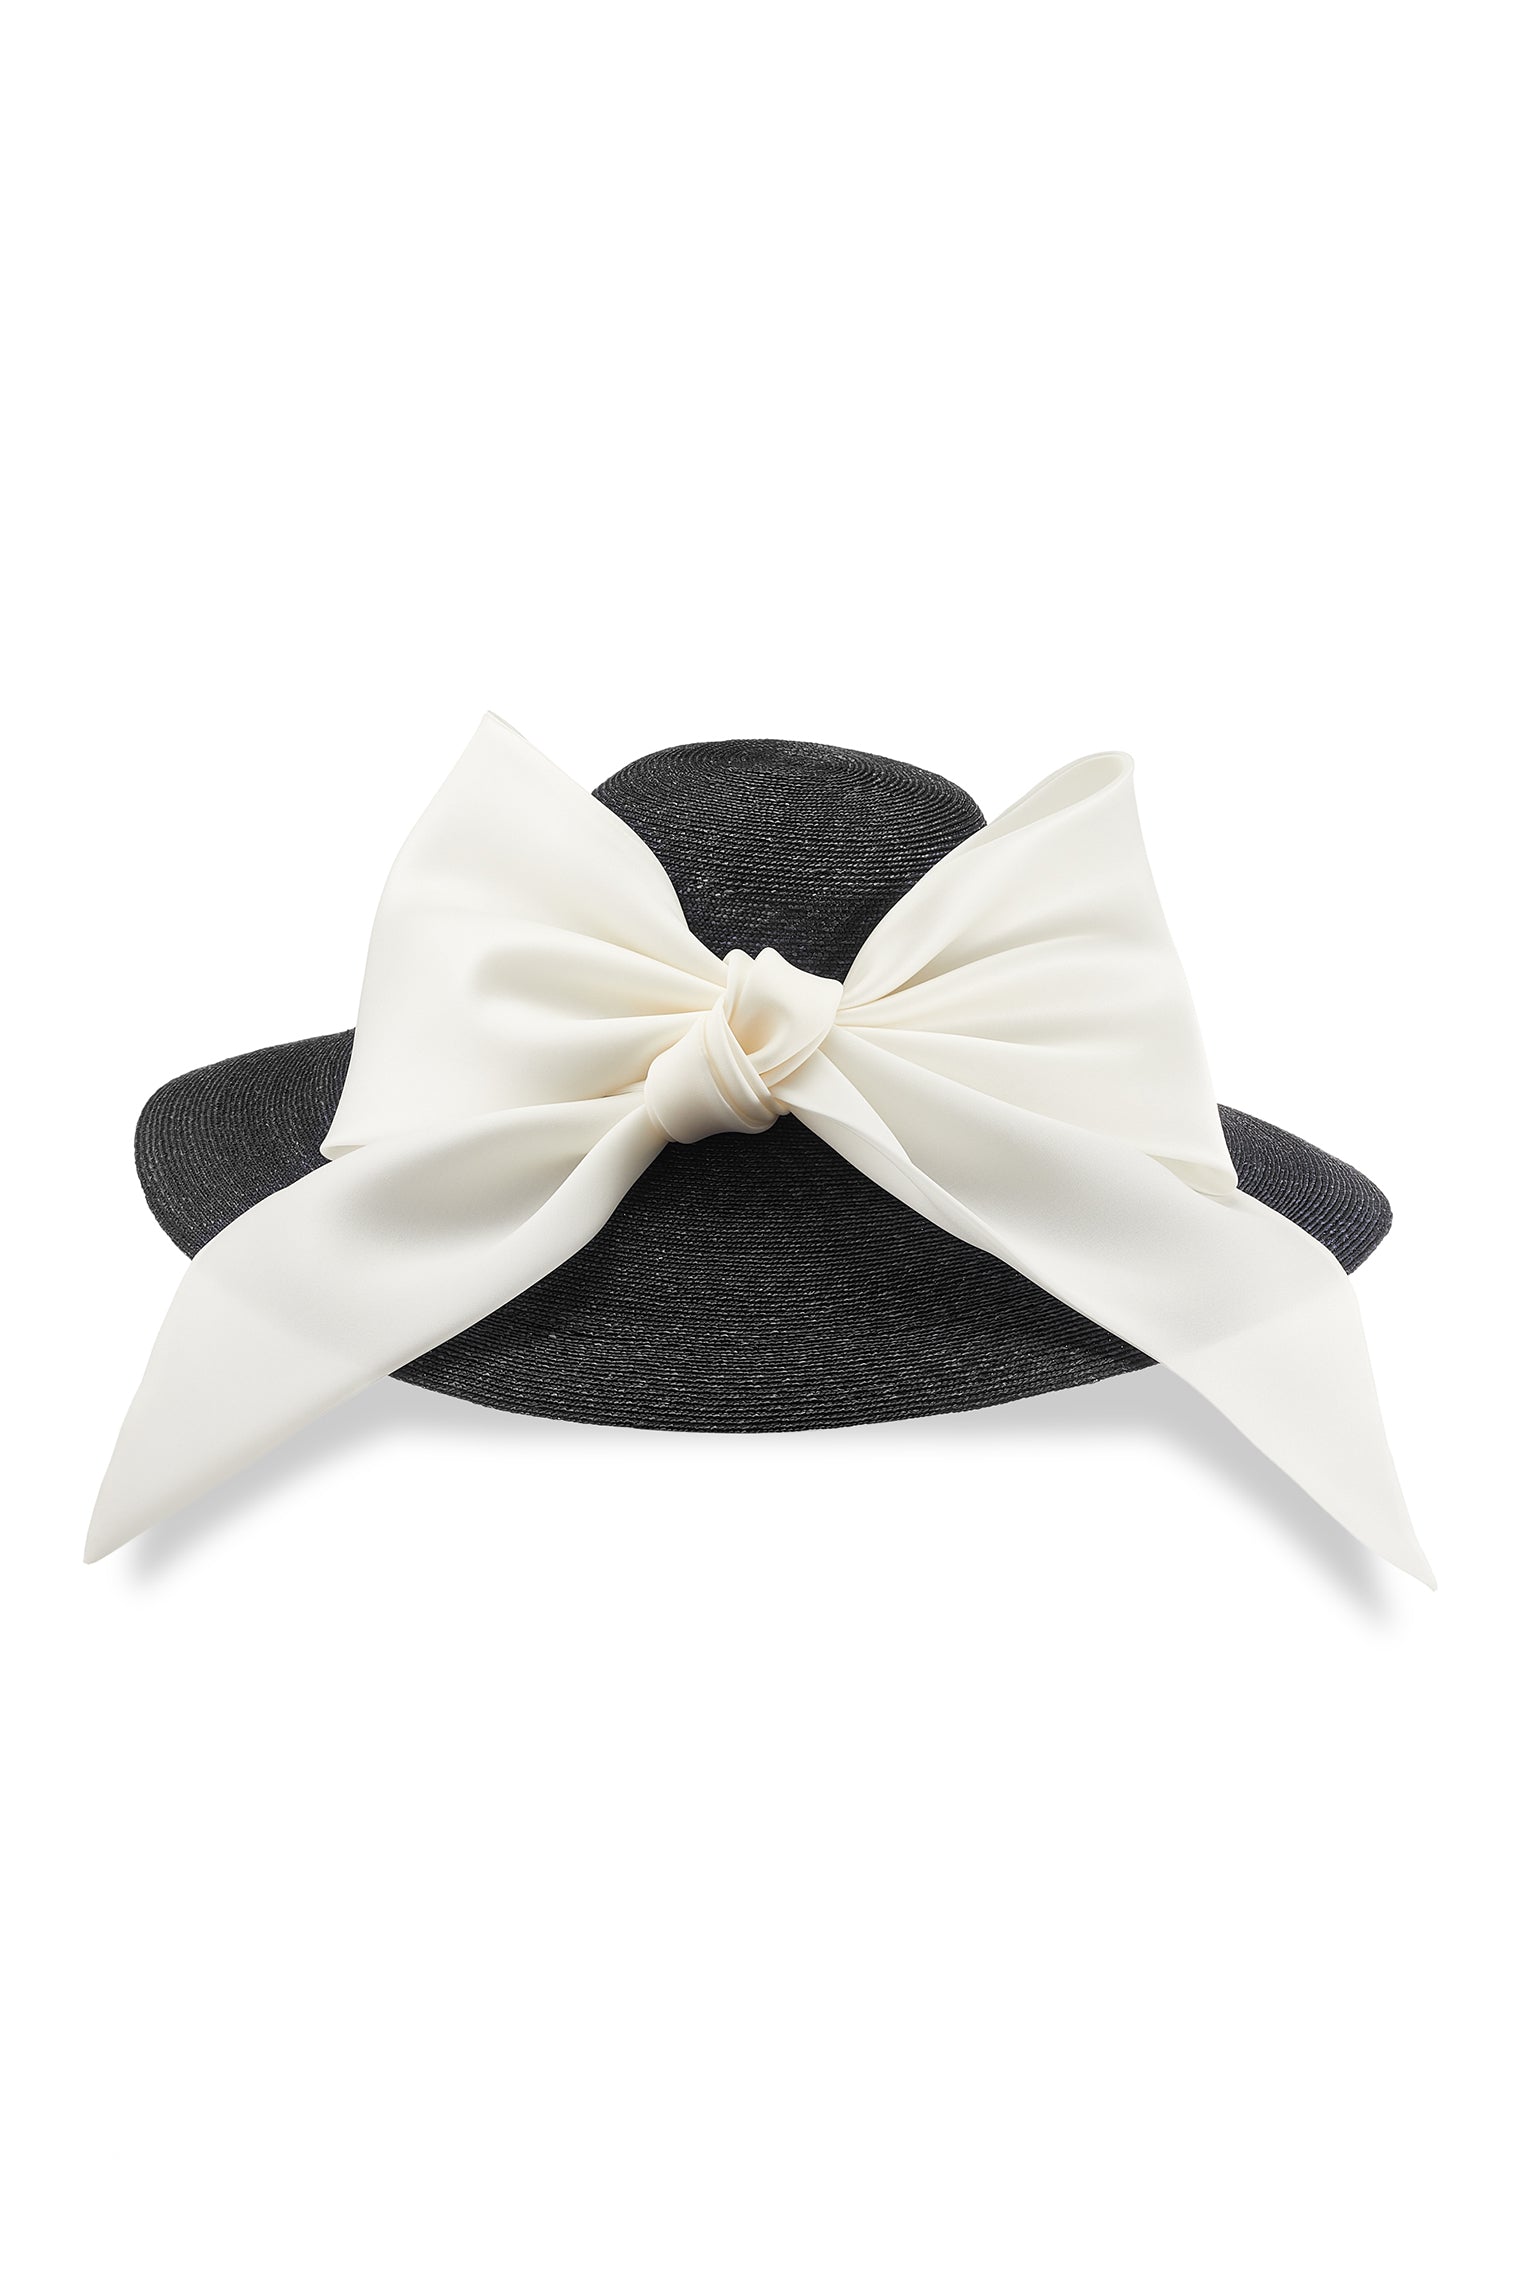 Darjeeling Black Wide Brim Hat - New Season Hat Collection - Lock & Co. Hatters London UK